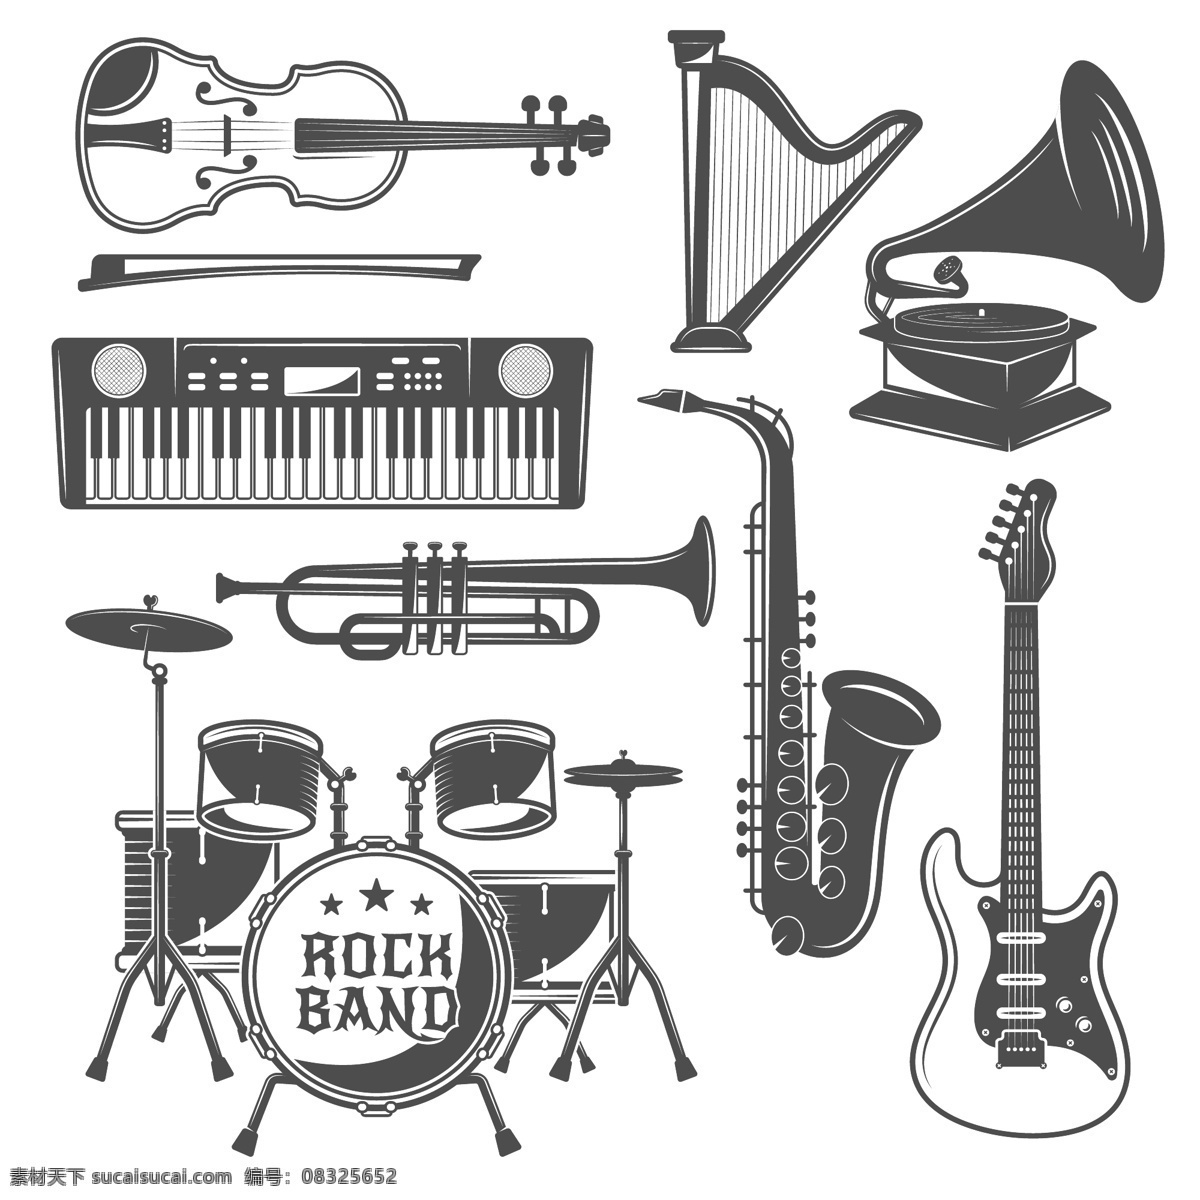 乐器图片 乐器 音乐家 演奏 专业 音乐行业 音乐领域 演奏音乐 乐团 职业 手绘 插图 表演